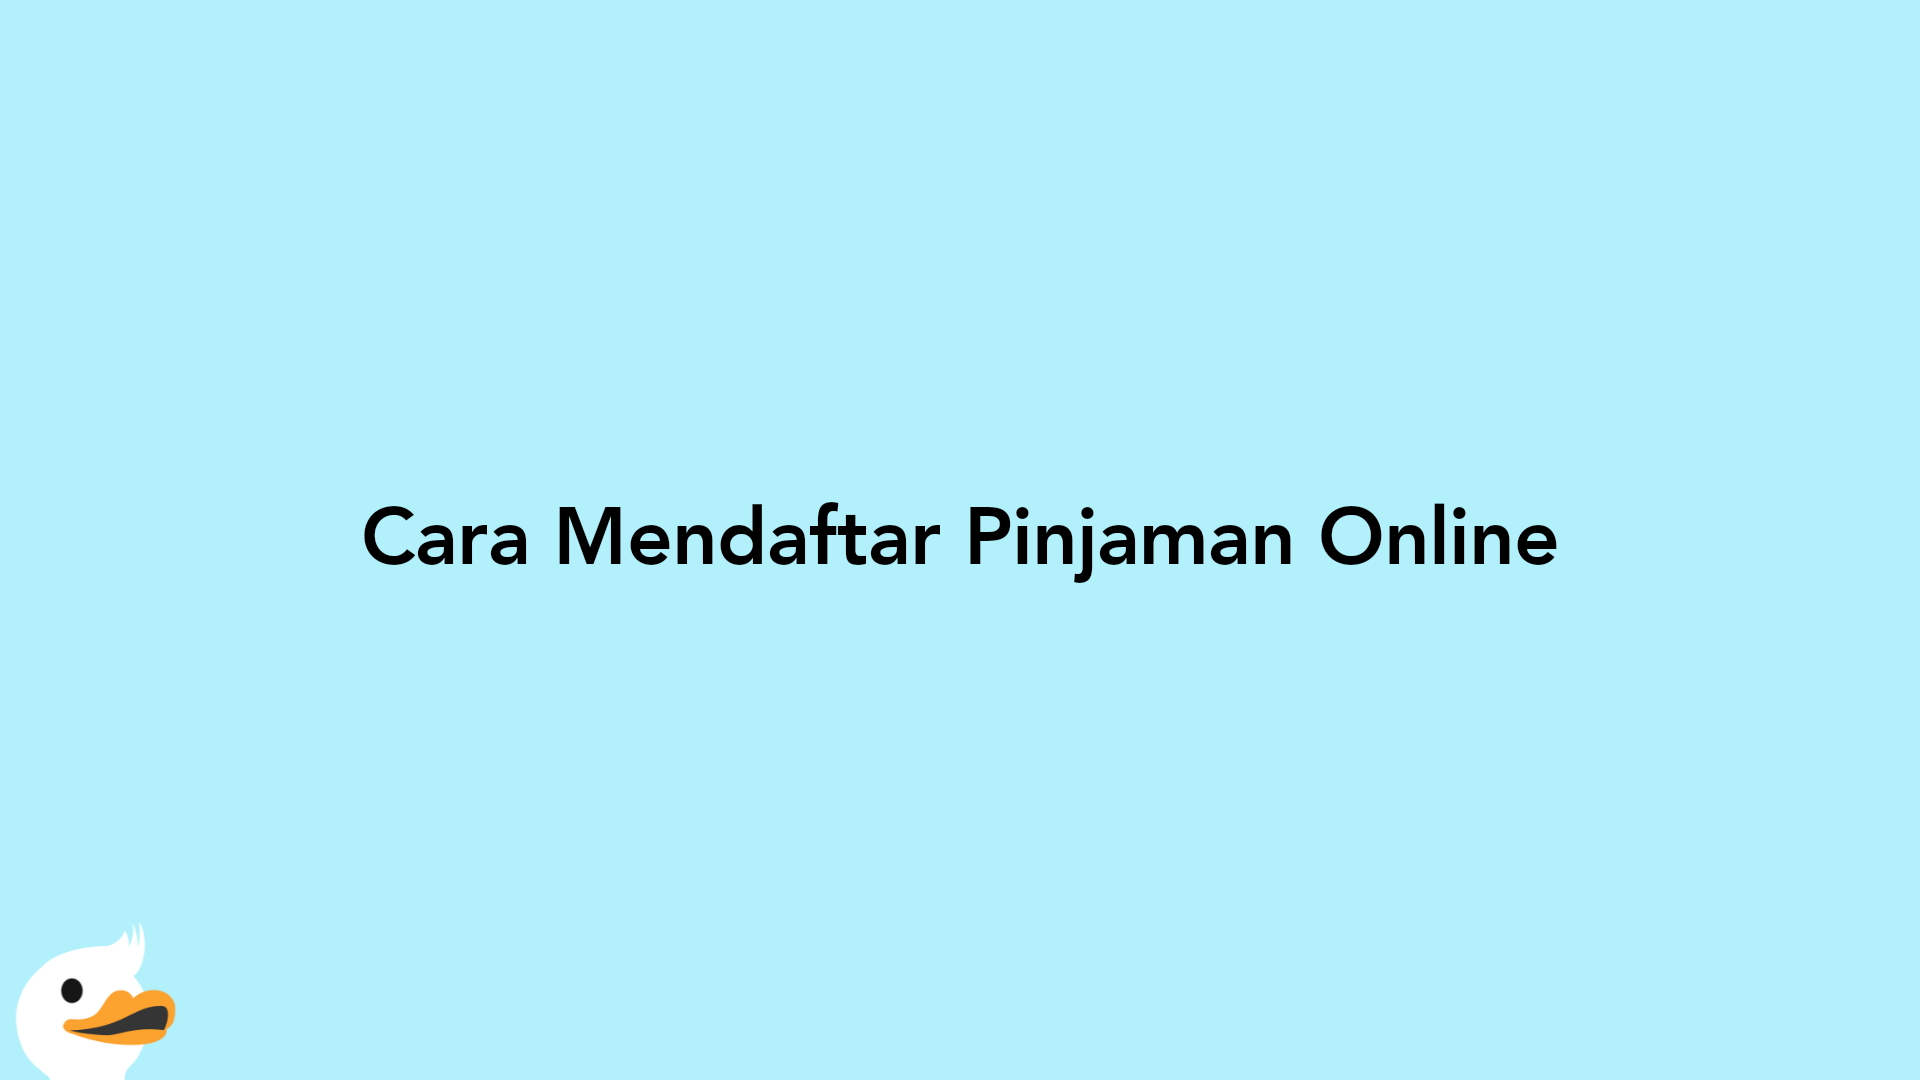 Cara Mendaftar Pinjaman Online